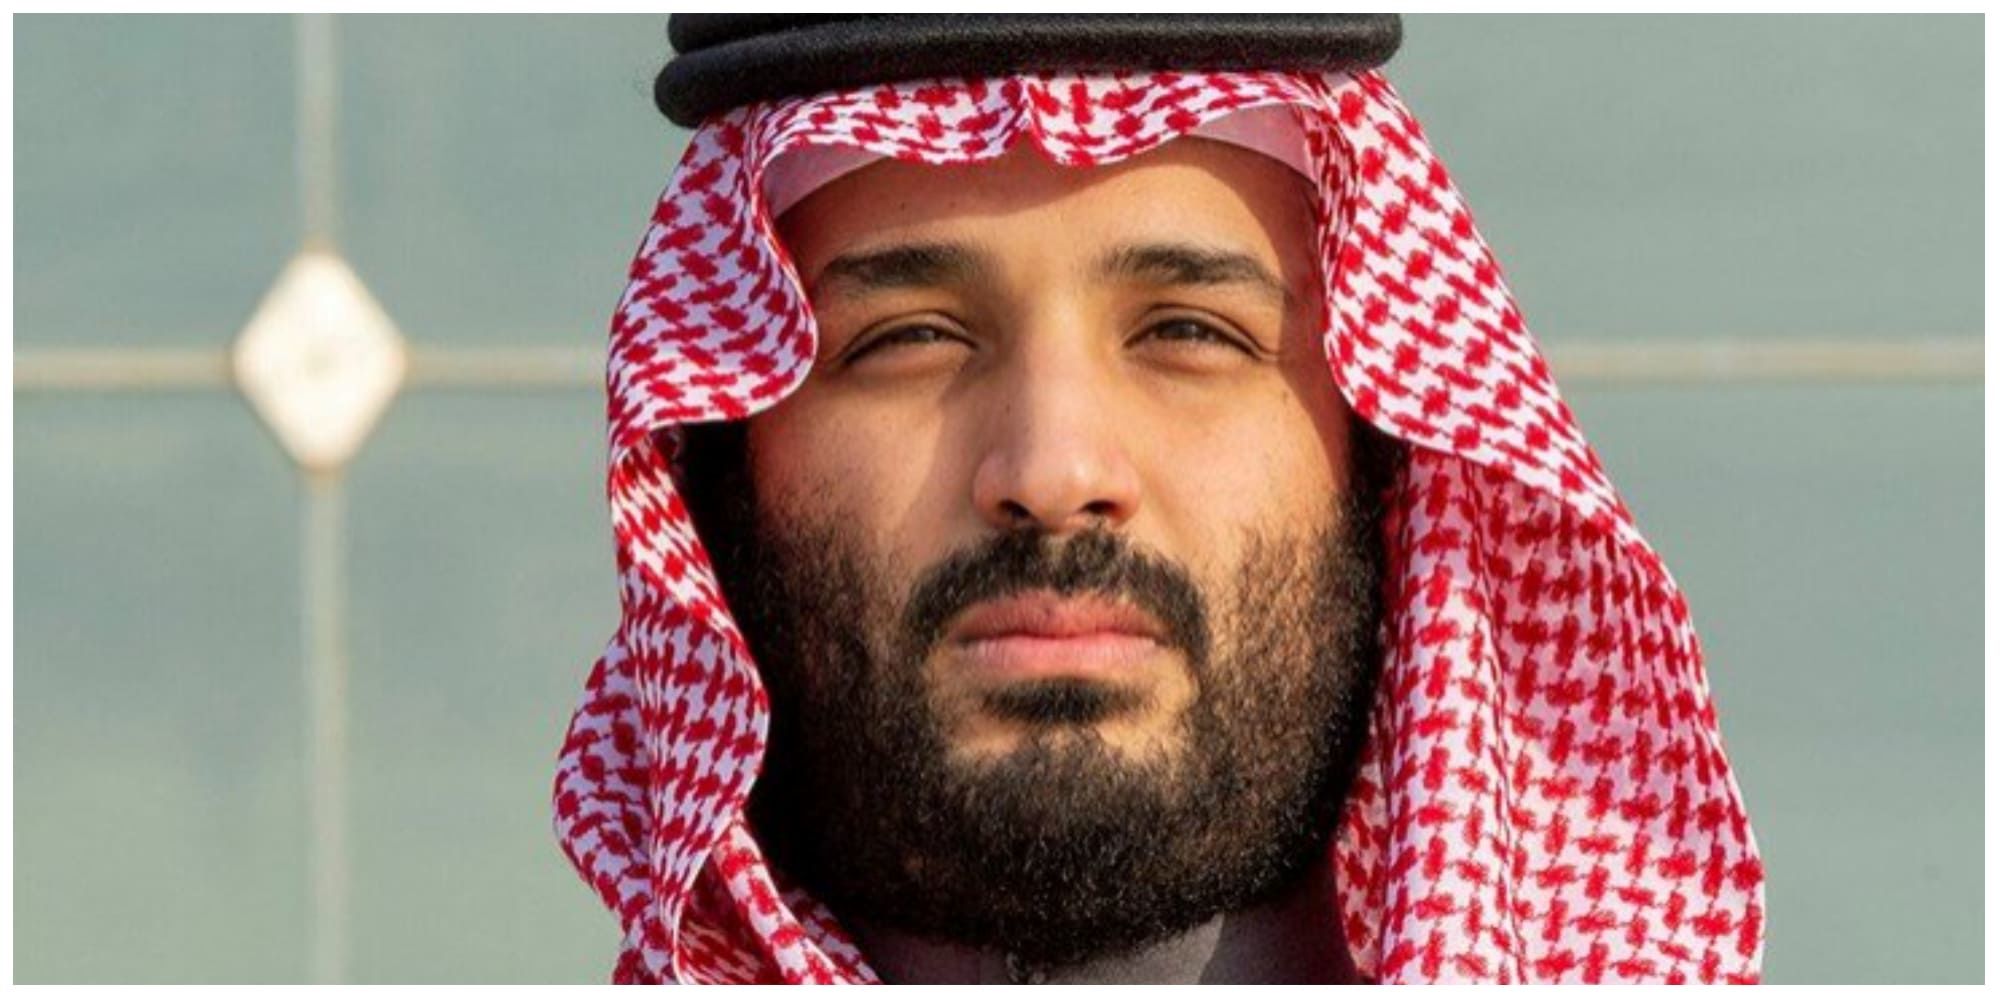 جنجال یک تابلو در عربستان/ این چهره ولیعهد بعدی عربستان است؟ + عکس